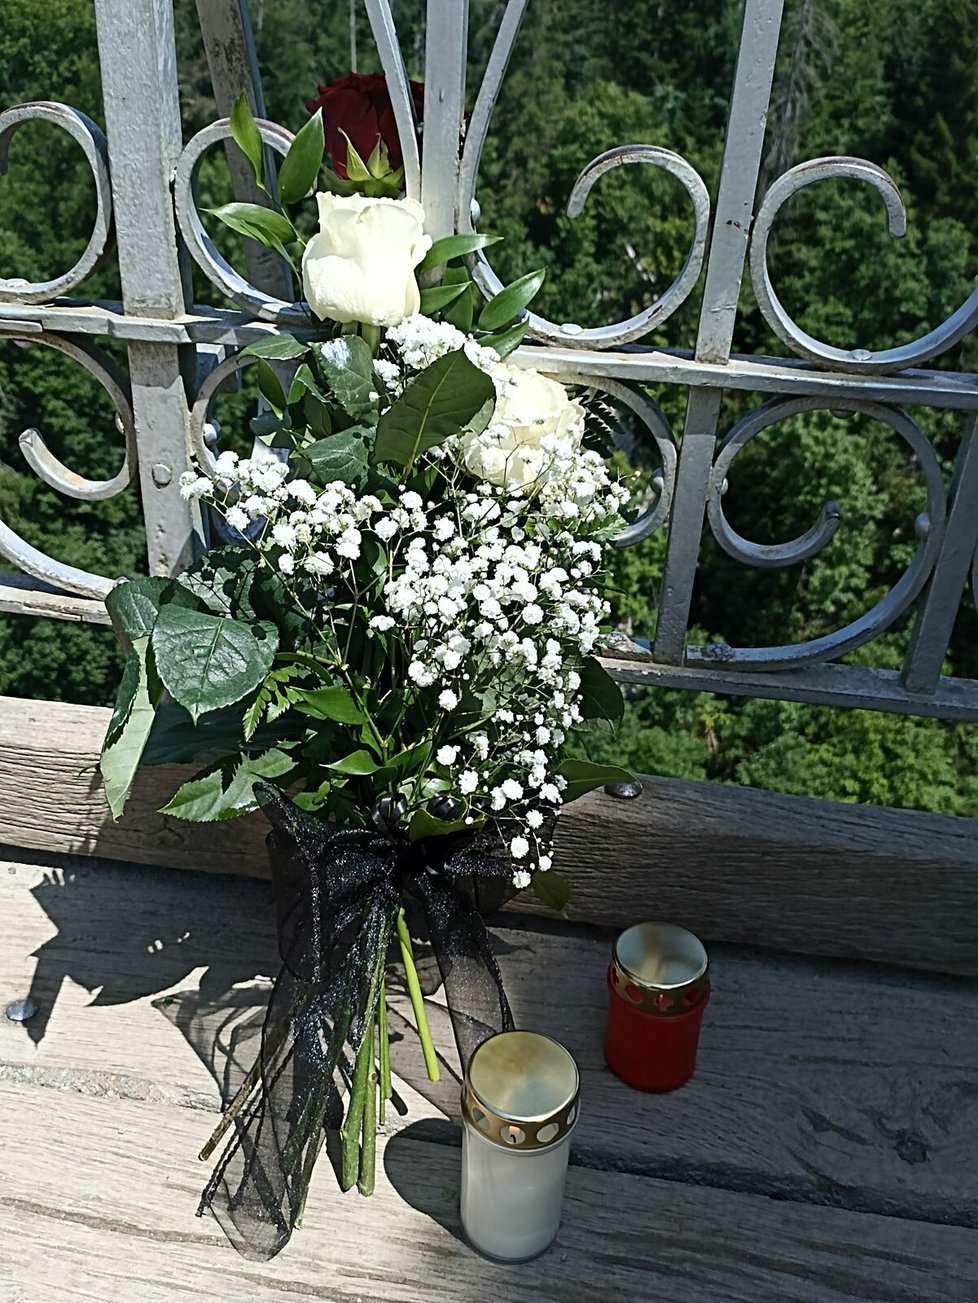 Na místě tragédie na Horním můstku se objevila kytice bílých růží s jednou růží červenou.